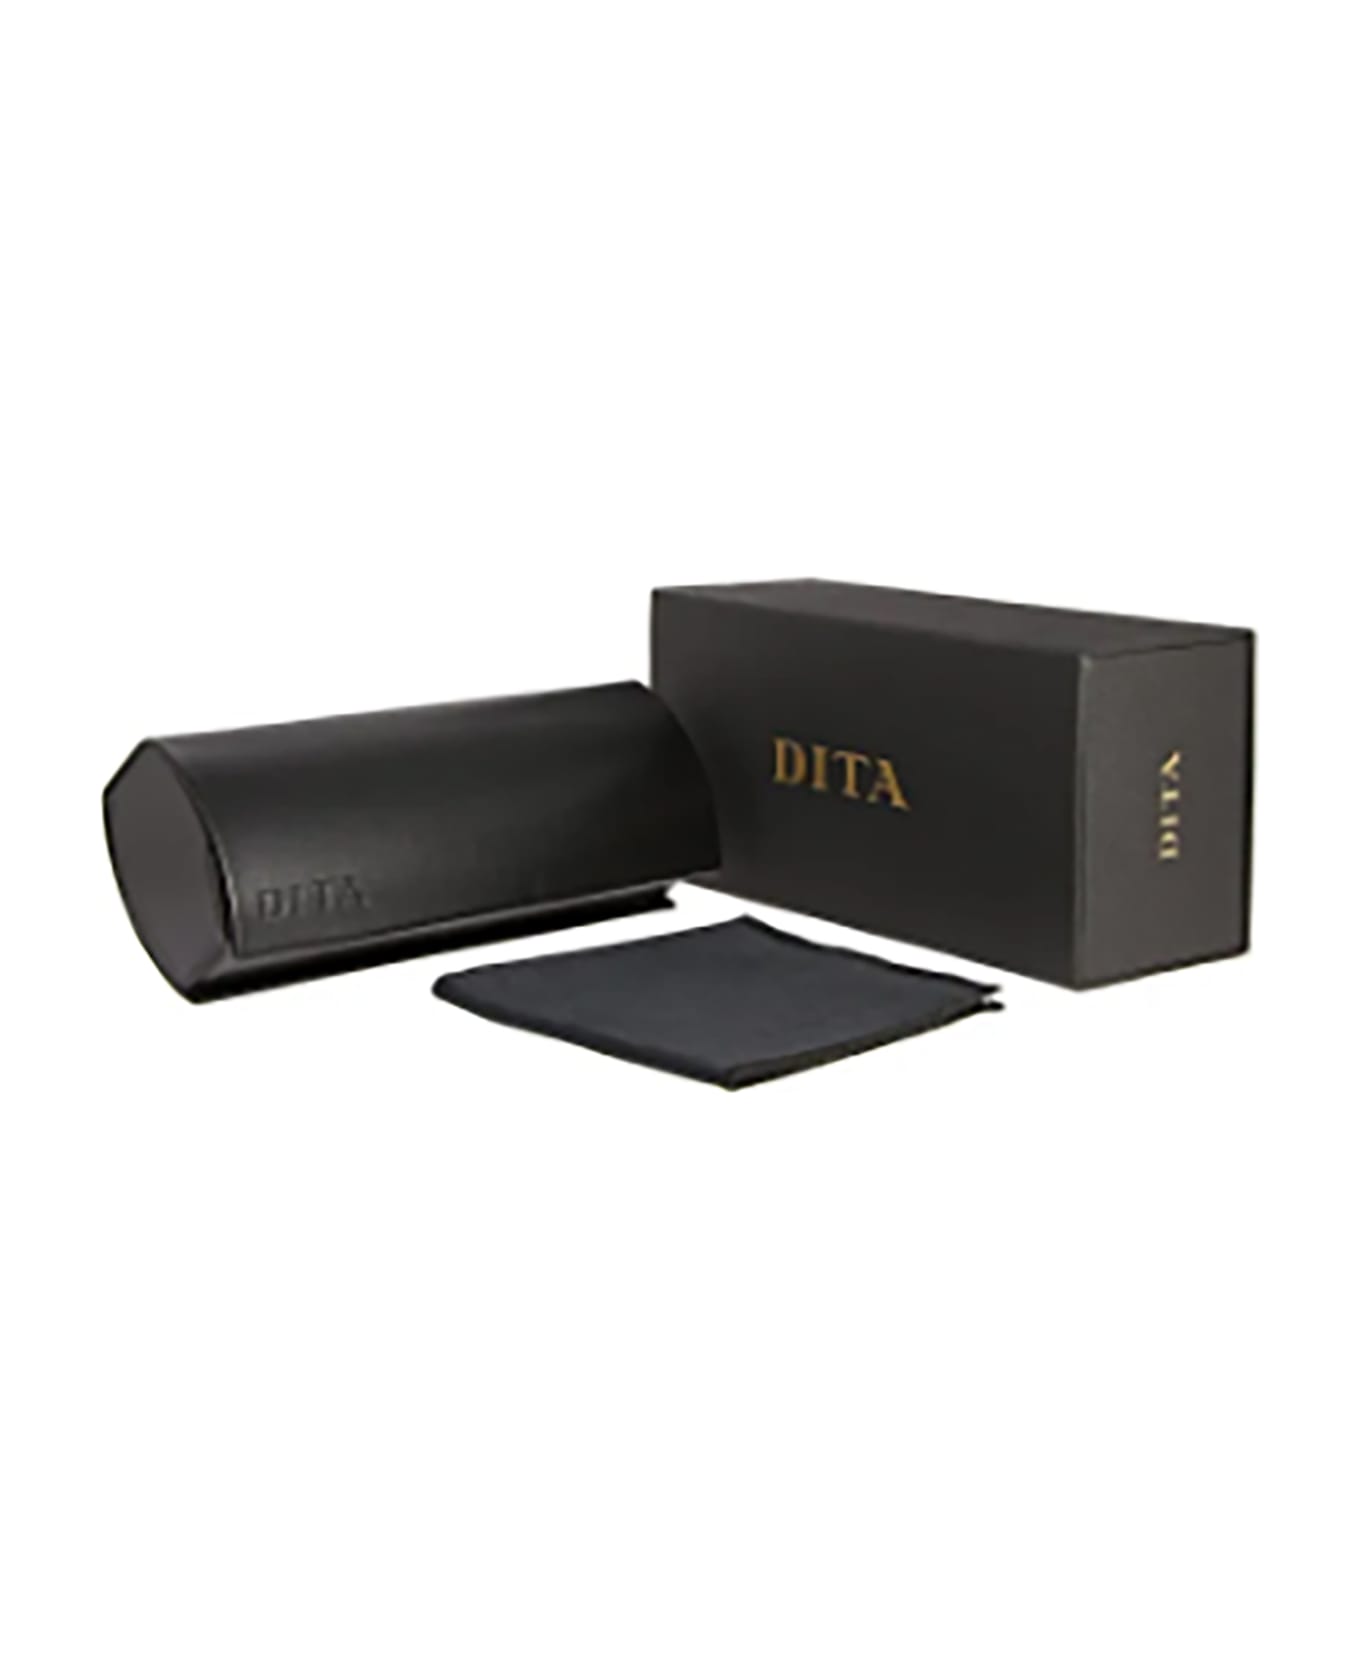 Dita DTX162/A/02 ARTOA.82 Eyewear - Black Iron_white Gold